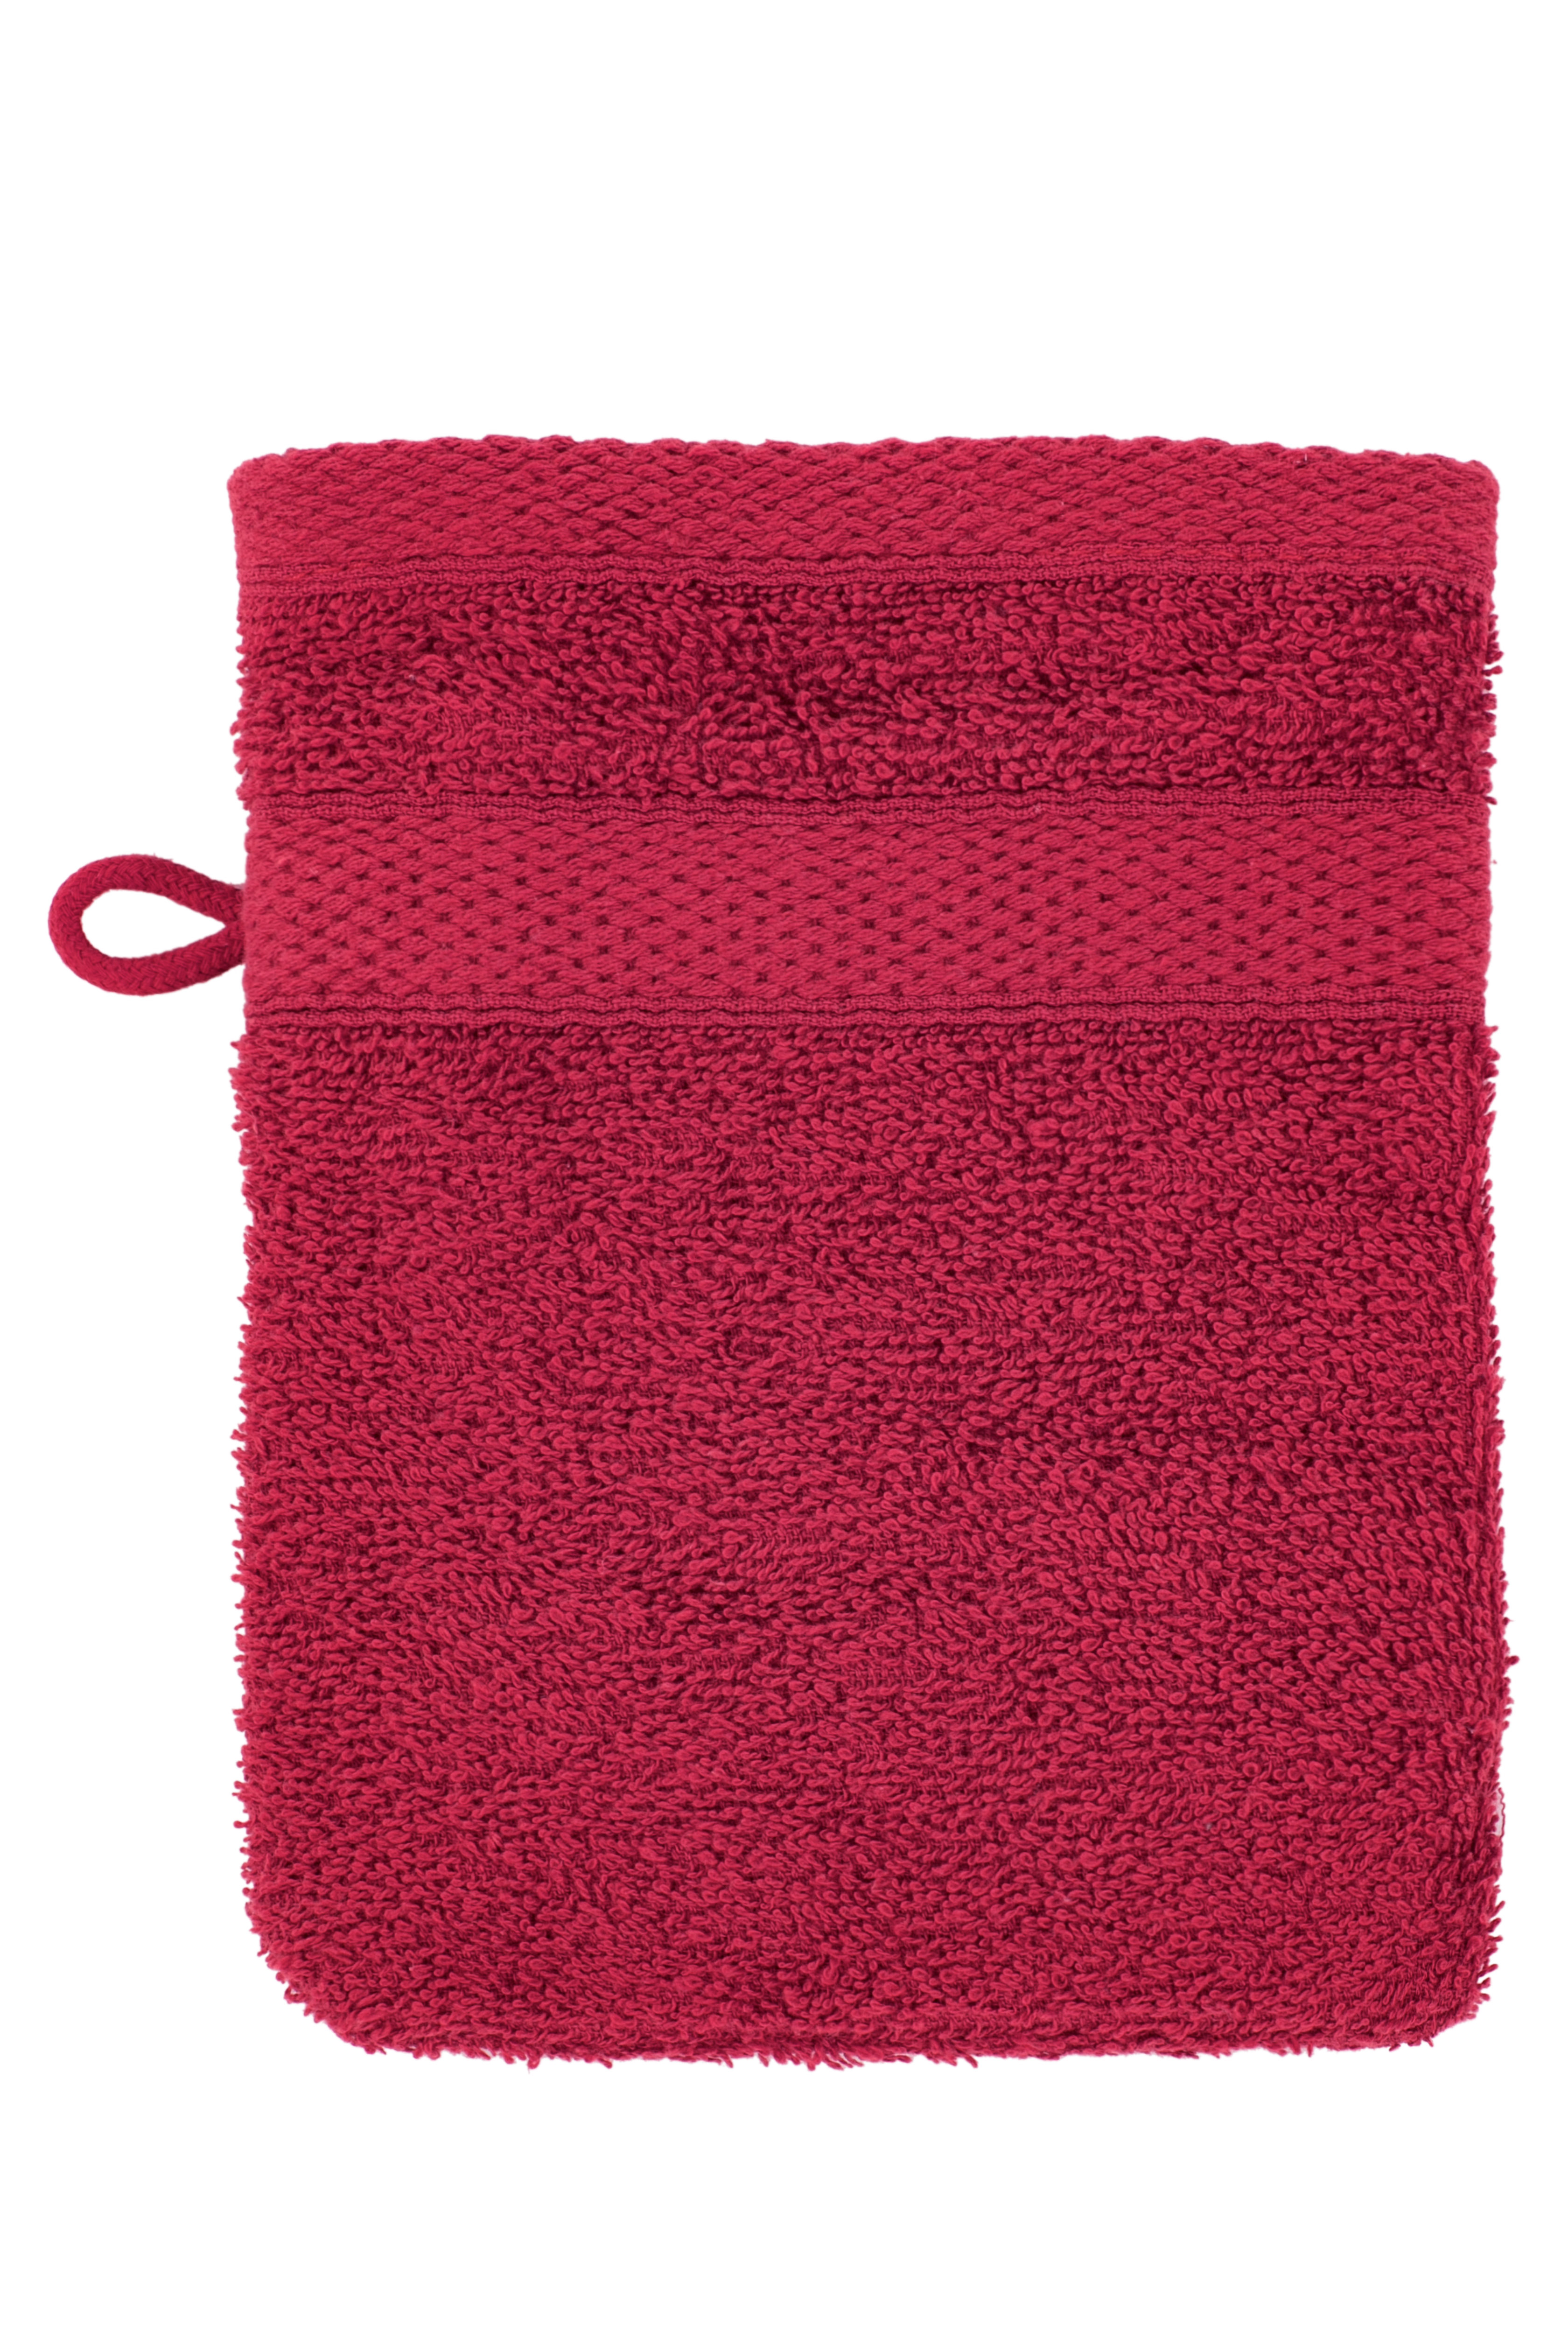 Washing glove 15x21cm, persian red - set2